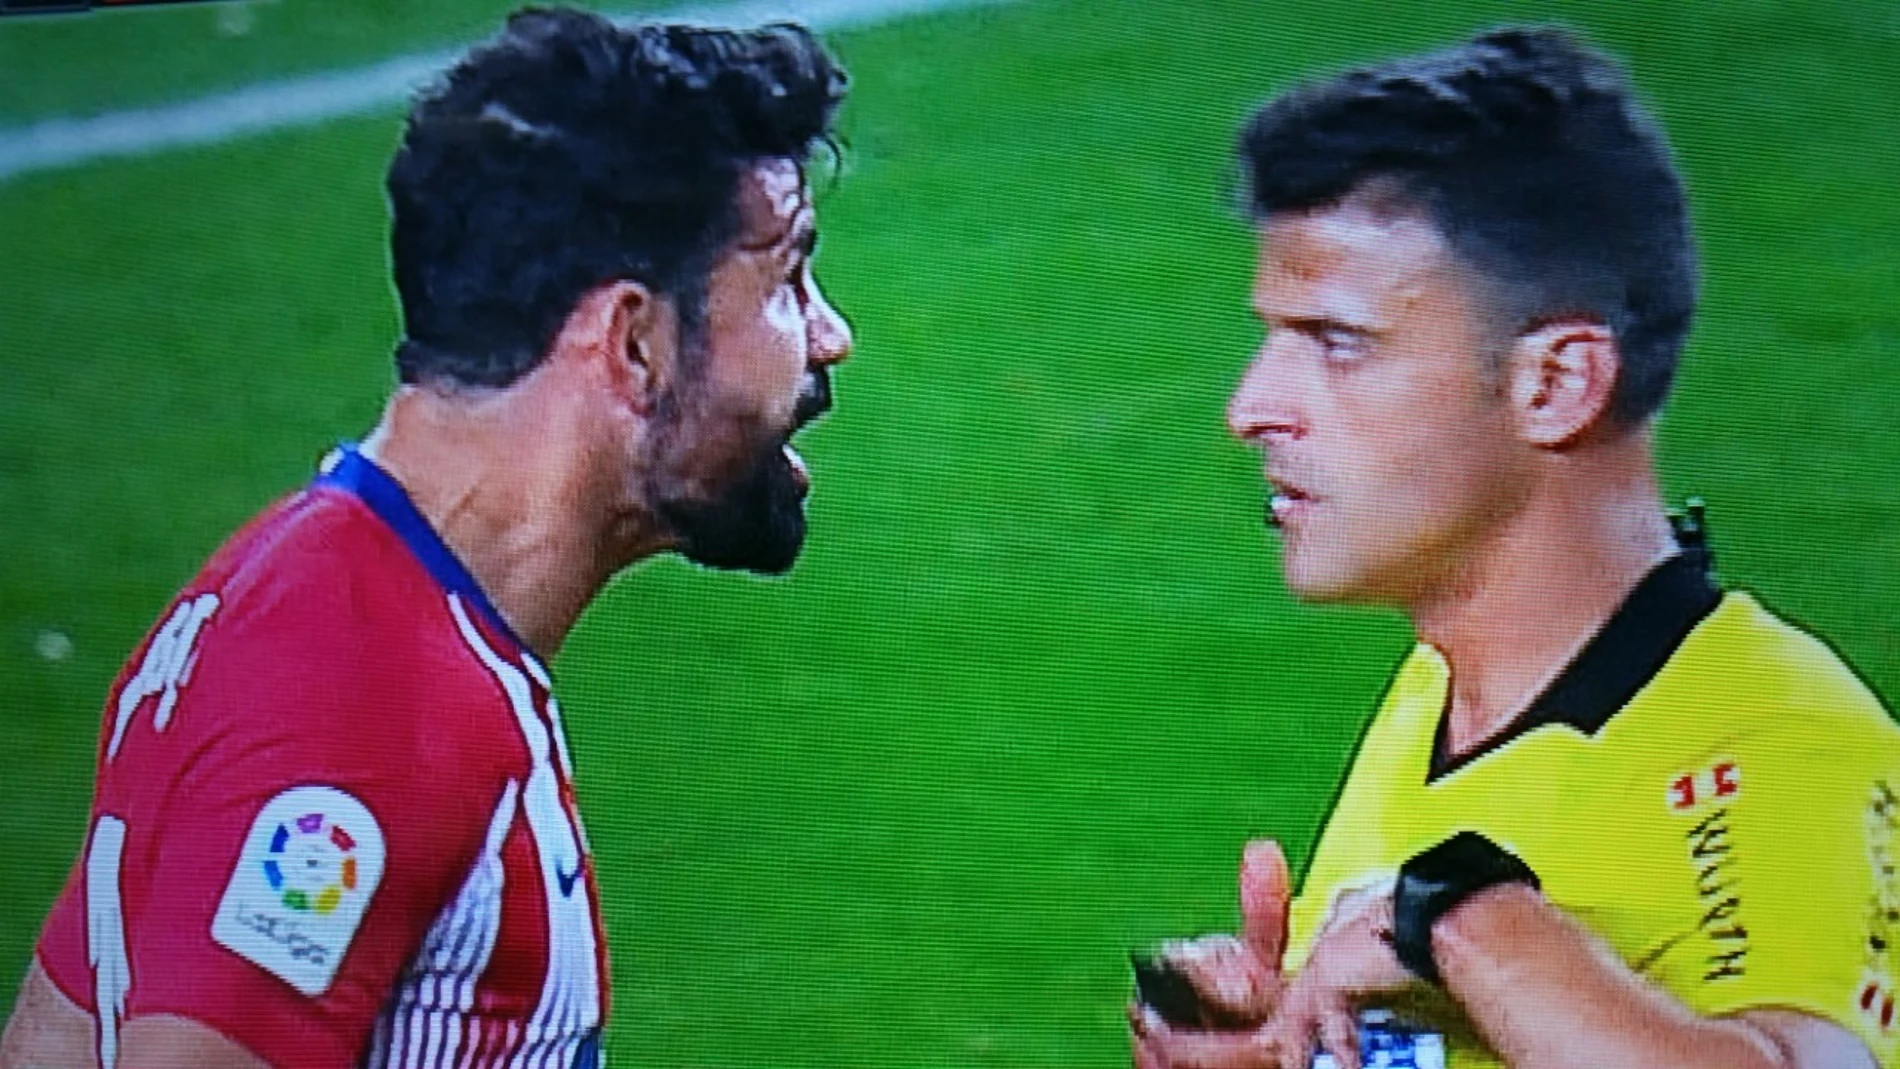 Diego Costa protesta al árbitro